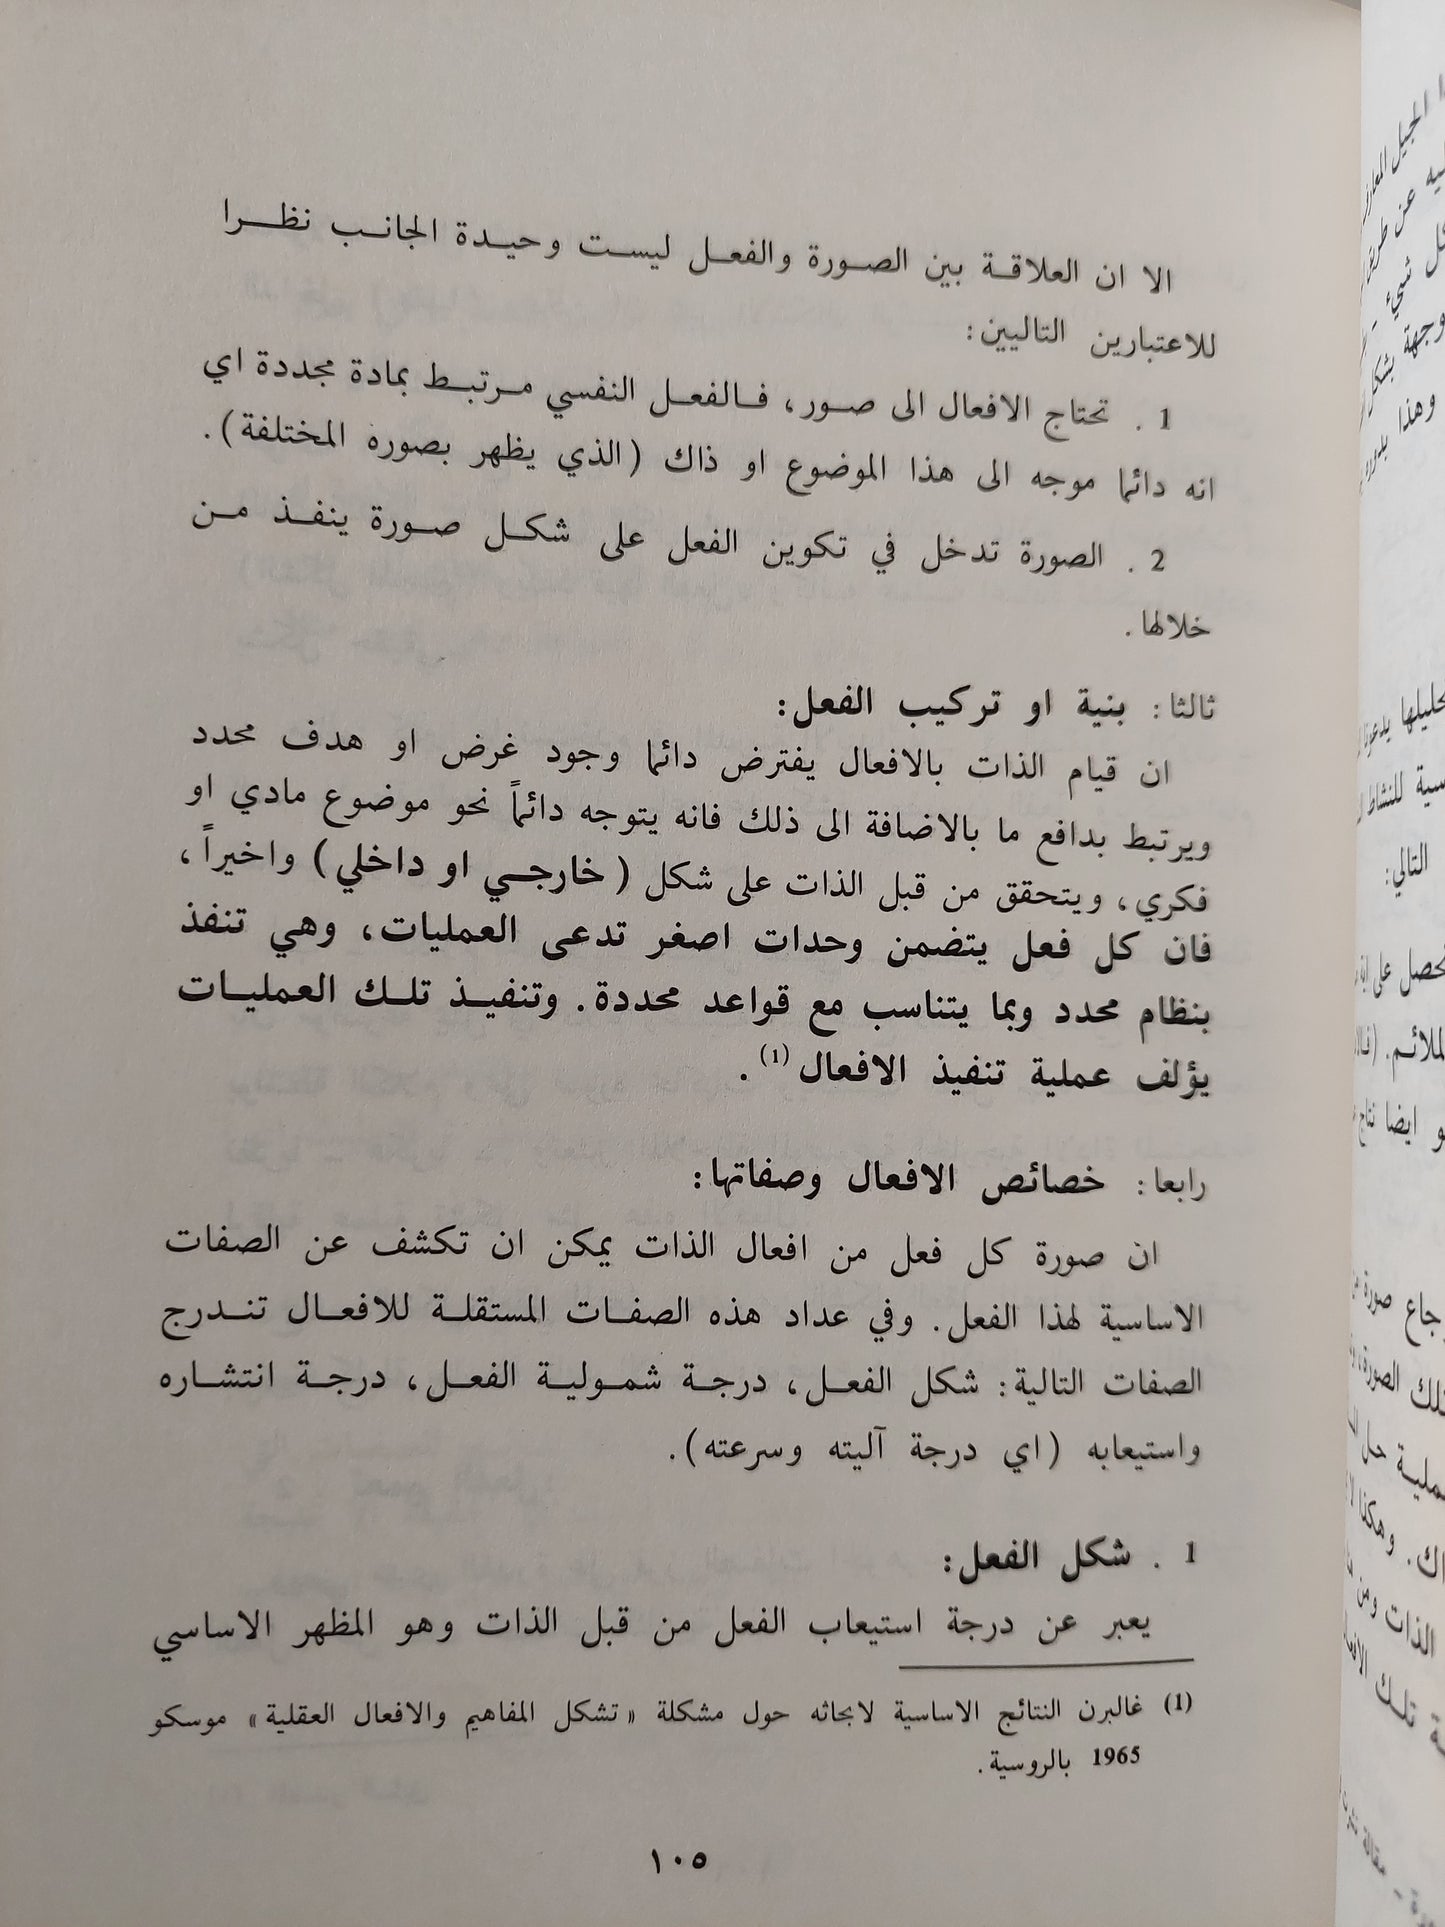 المنهج التعليمي / د. جبرائيل بشارة ط1